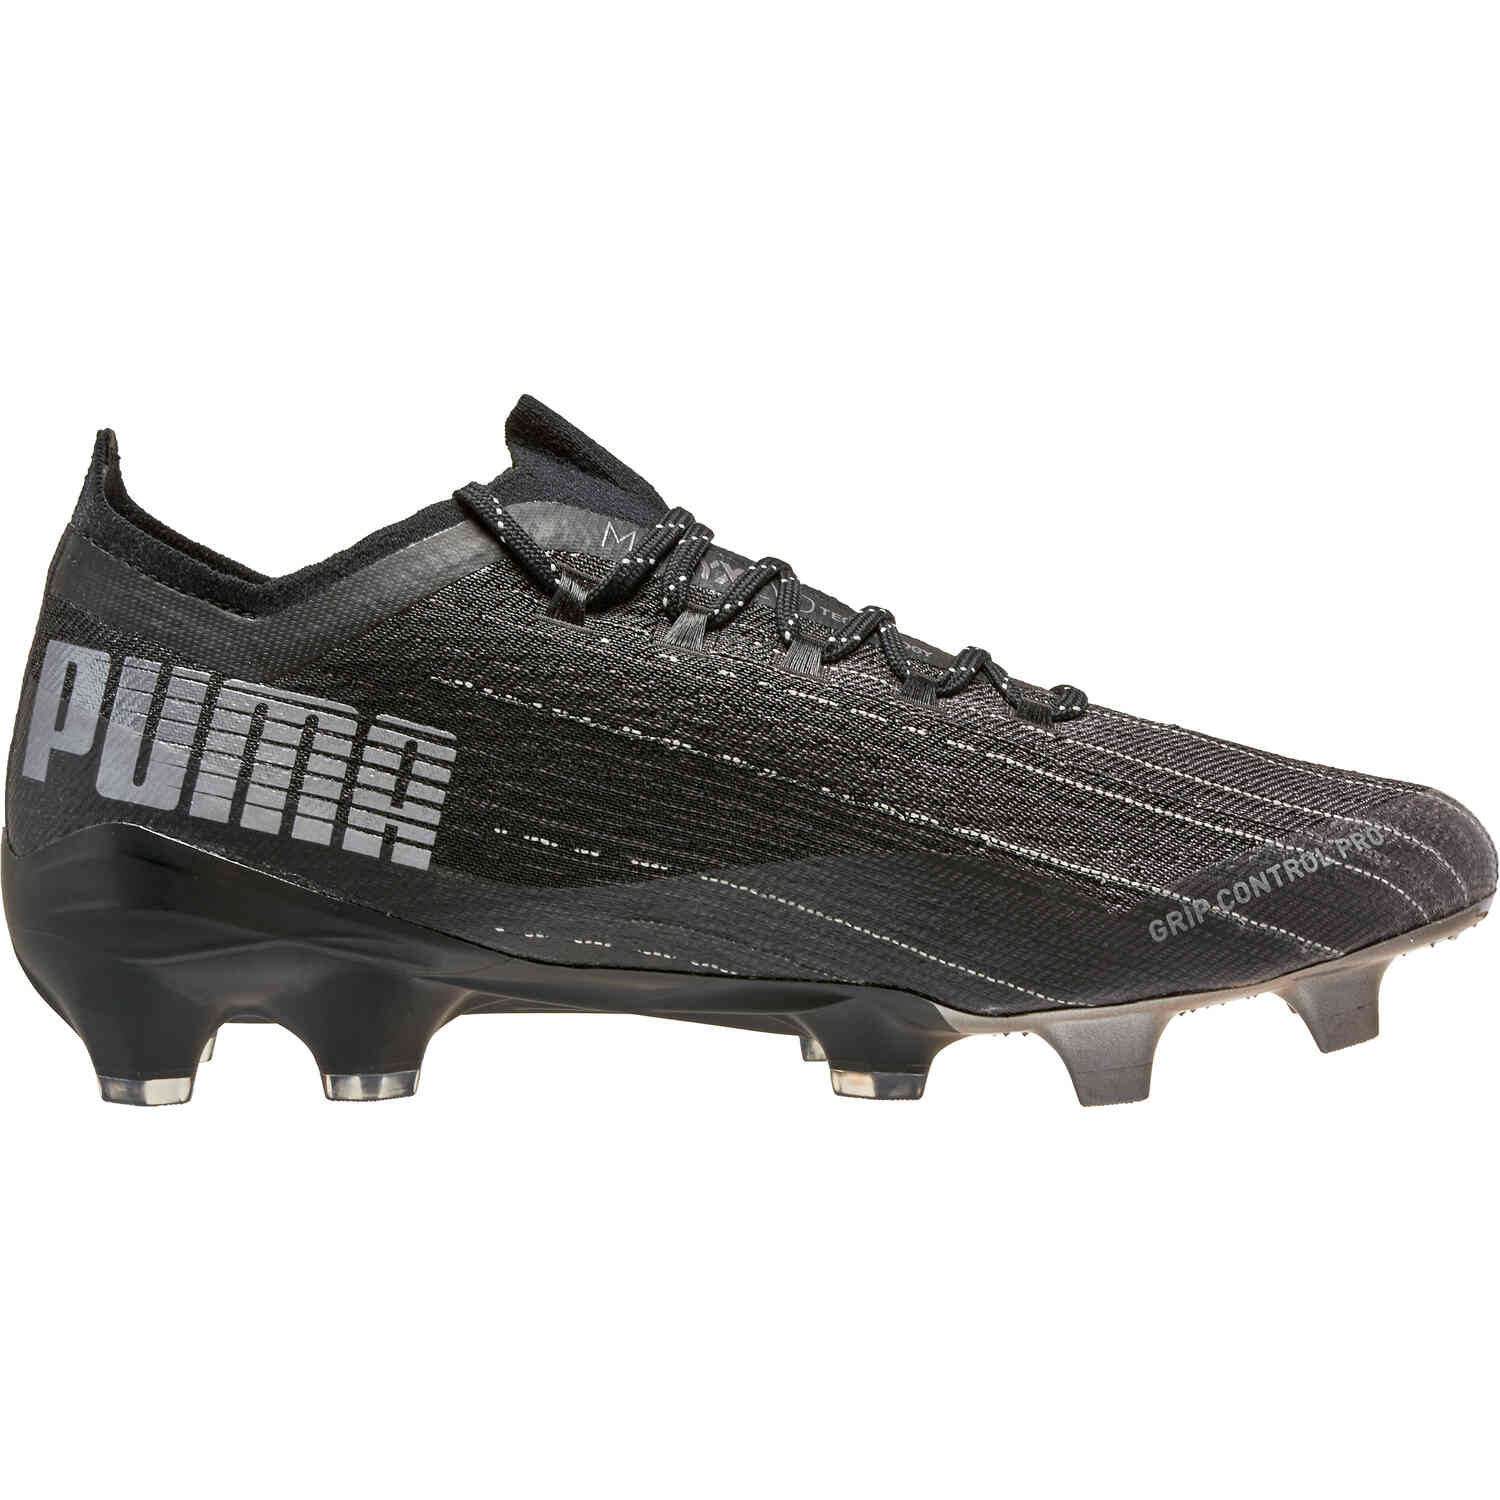 Puma Ultra 1.1 FG - Eclipse Pack - SoccerPro